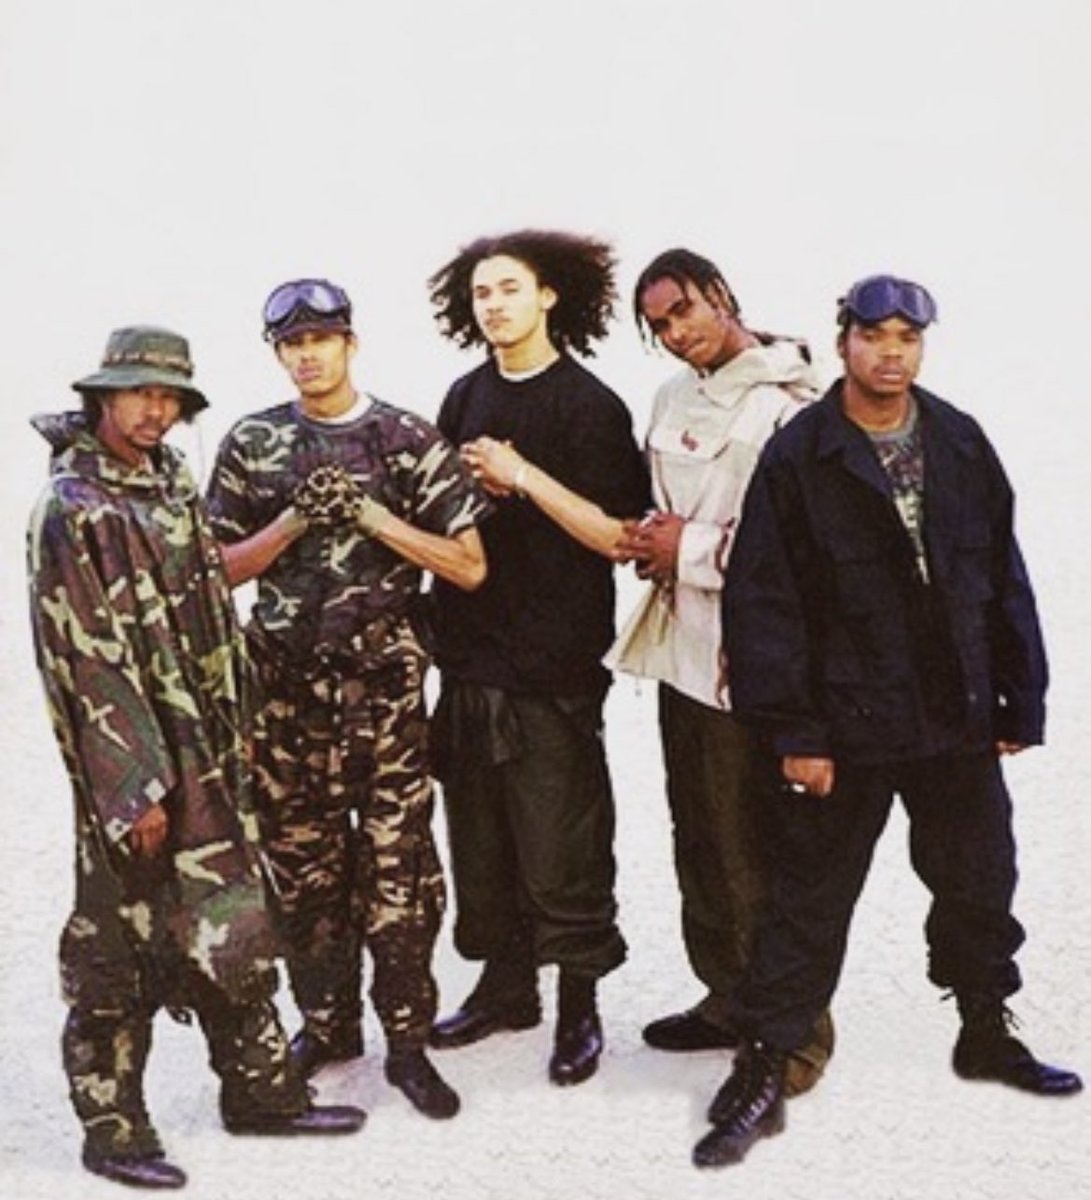 Those Thugs….. #hiphop #90shiphop #bonesthugsandharmony ✌🏾✌🏾